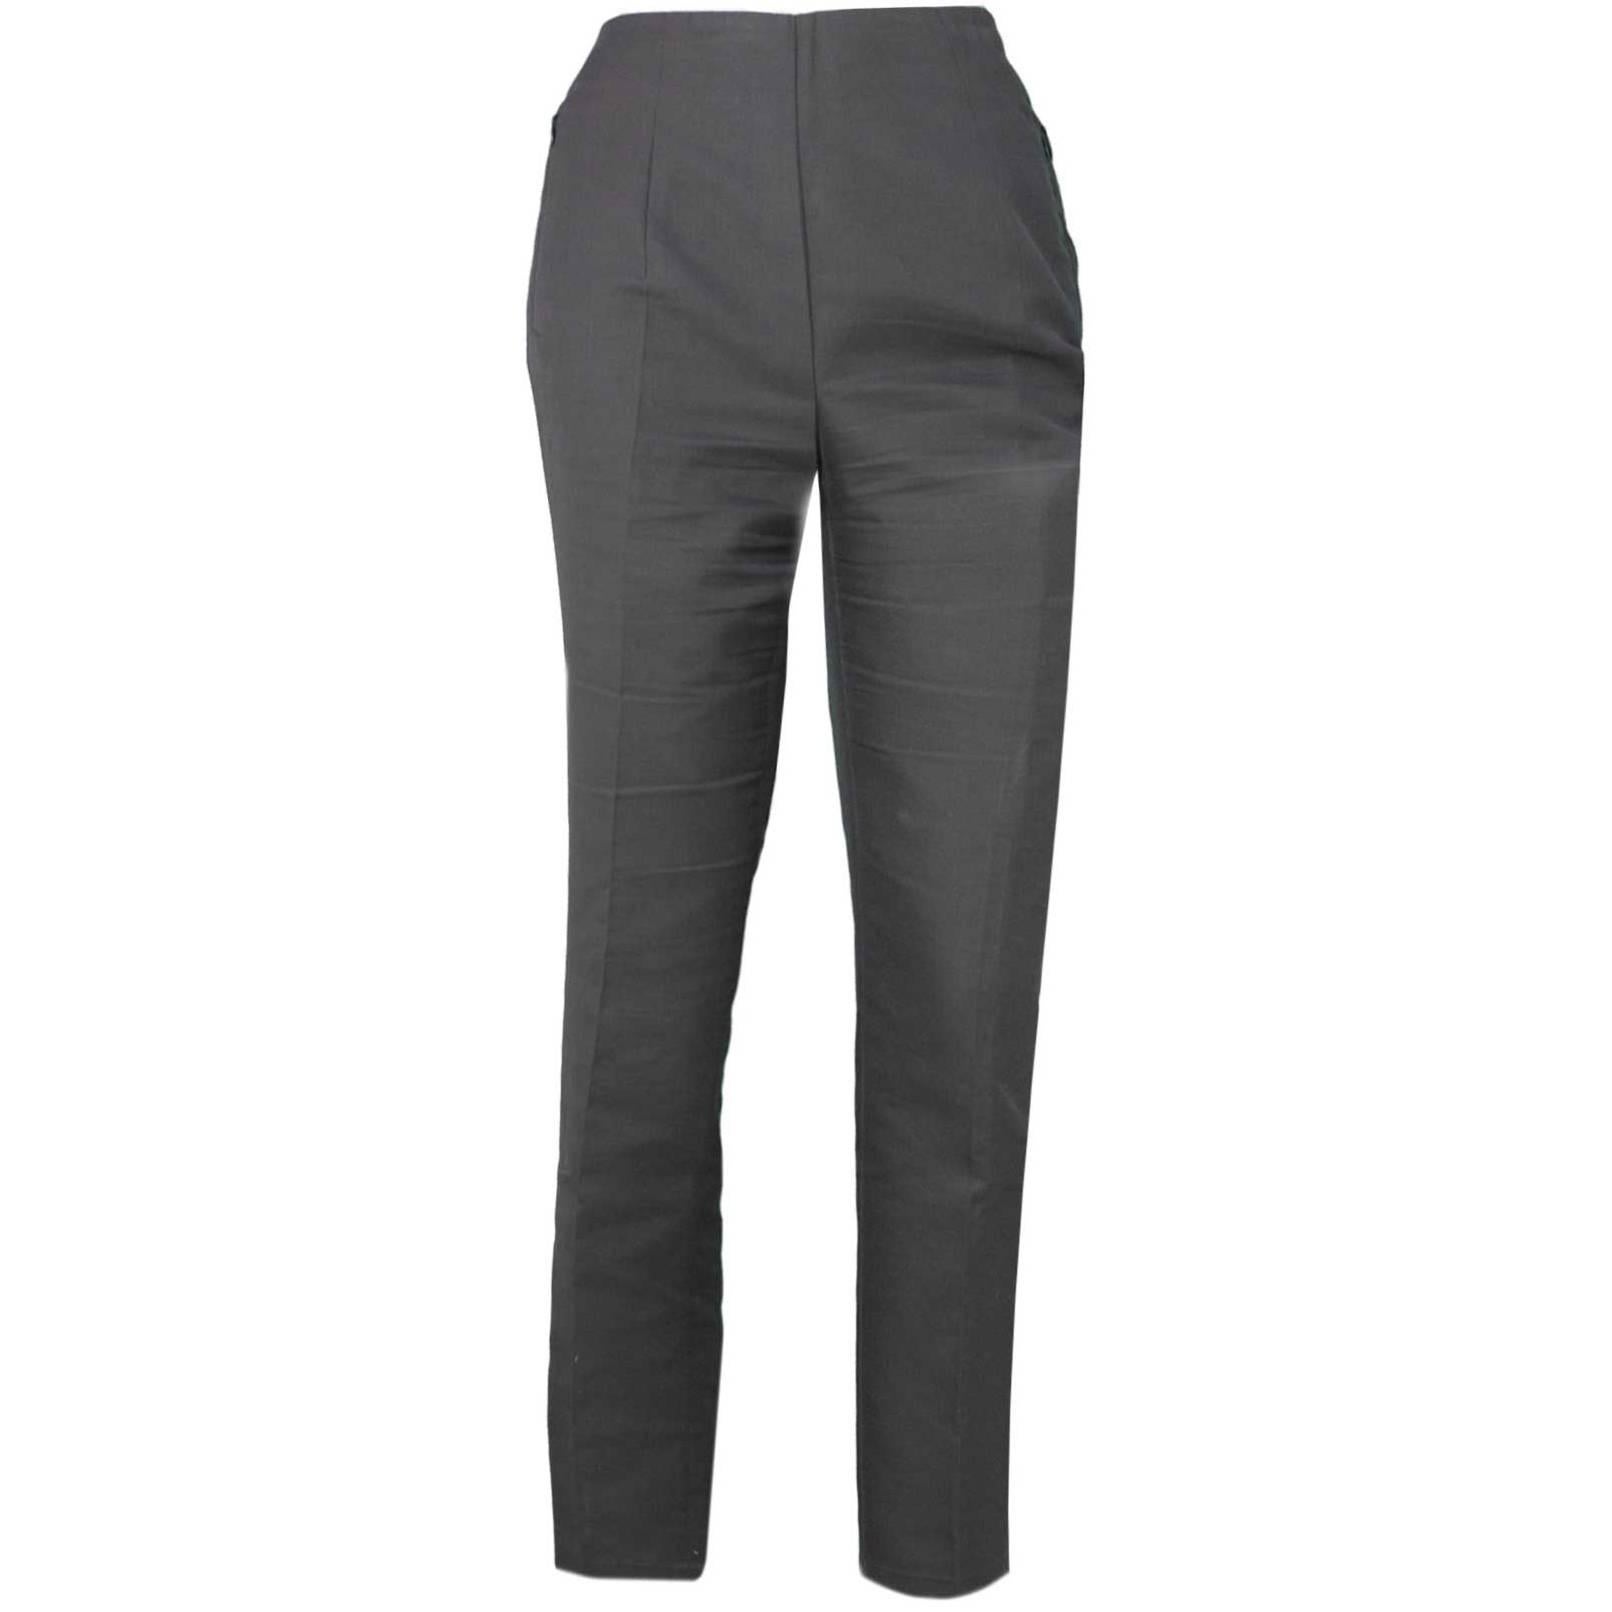 Akris Grey Cropped Pants Sz 8